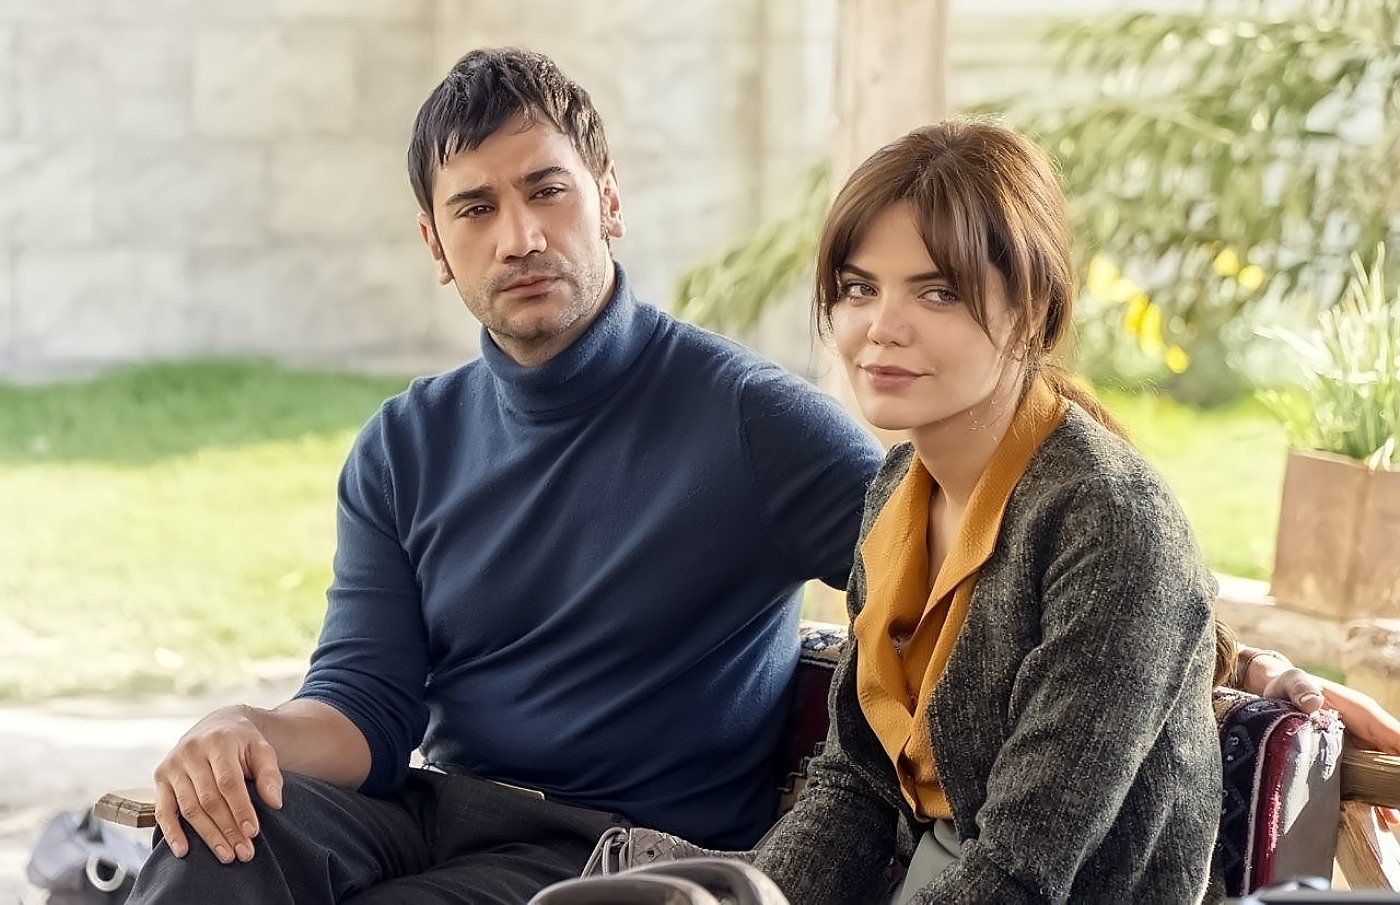 Tierra amarga comenzó con la historia de amor de Züleyha y Yilmaz, interpretados por Hilal Altınbilek y Uğur Güneş